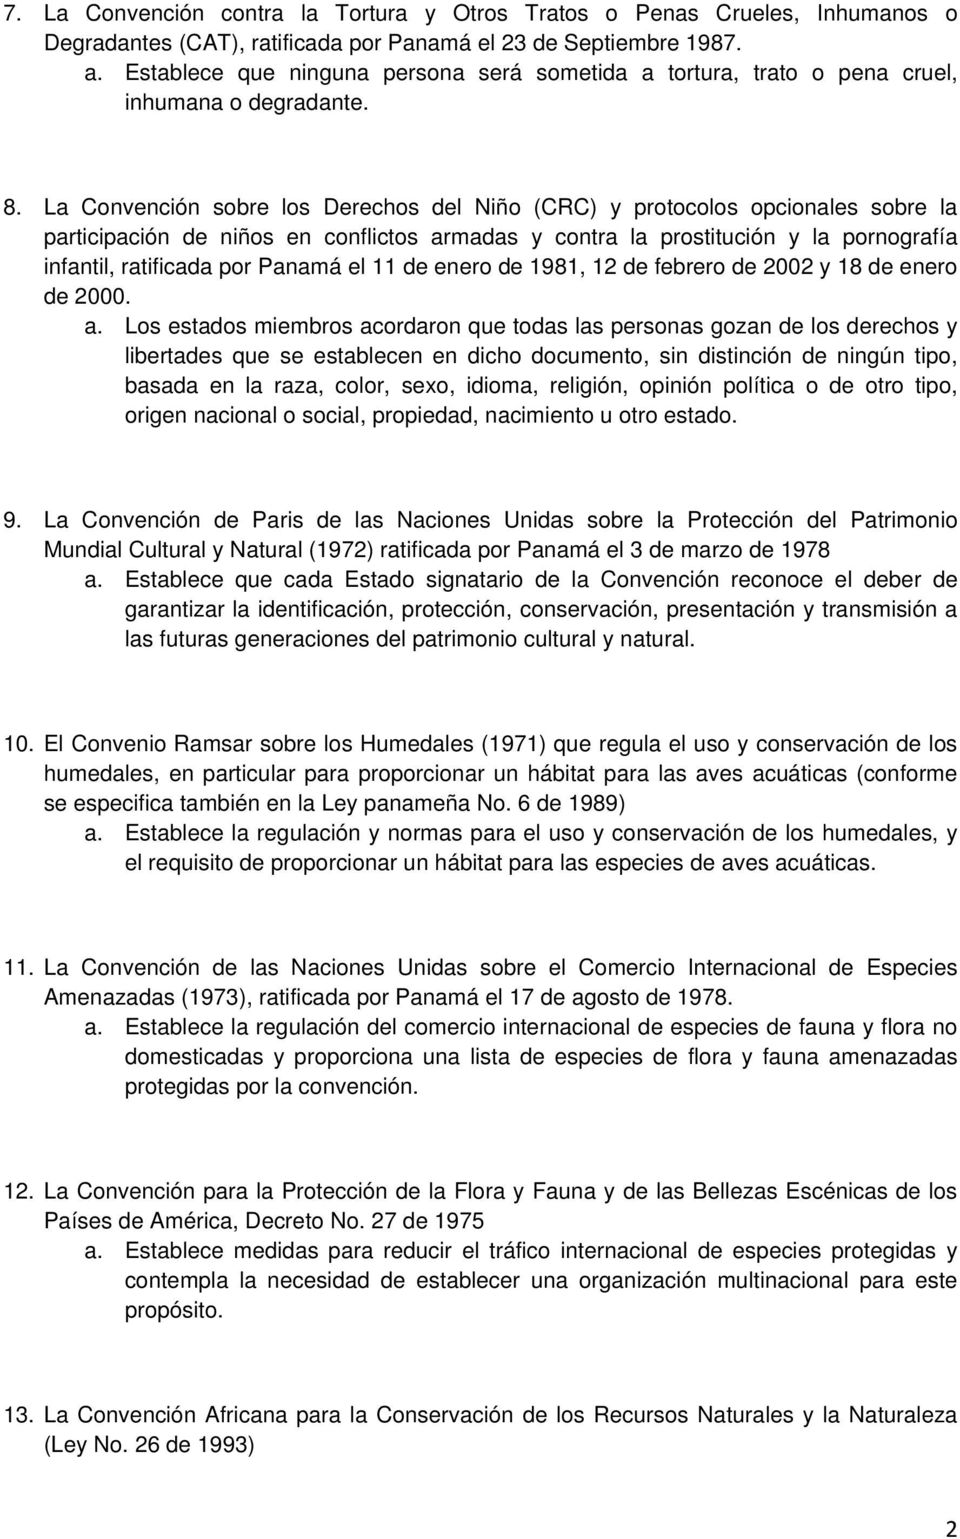 La Convención sobre los Derechos del Niño (CRC) y protocolos opcionales sobre la participación de niños en conflictos armadas y contra la prostitución y la pornografía infantil, ratificada por Panamá